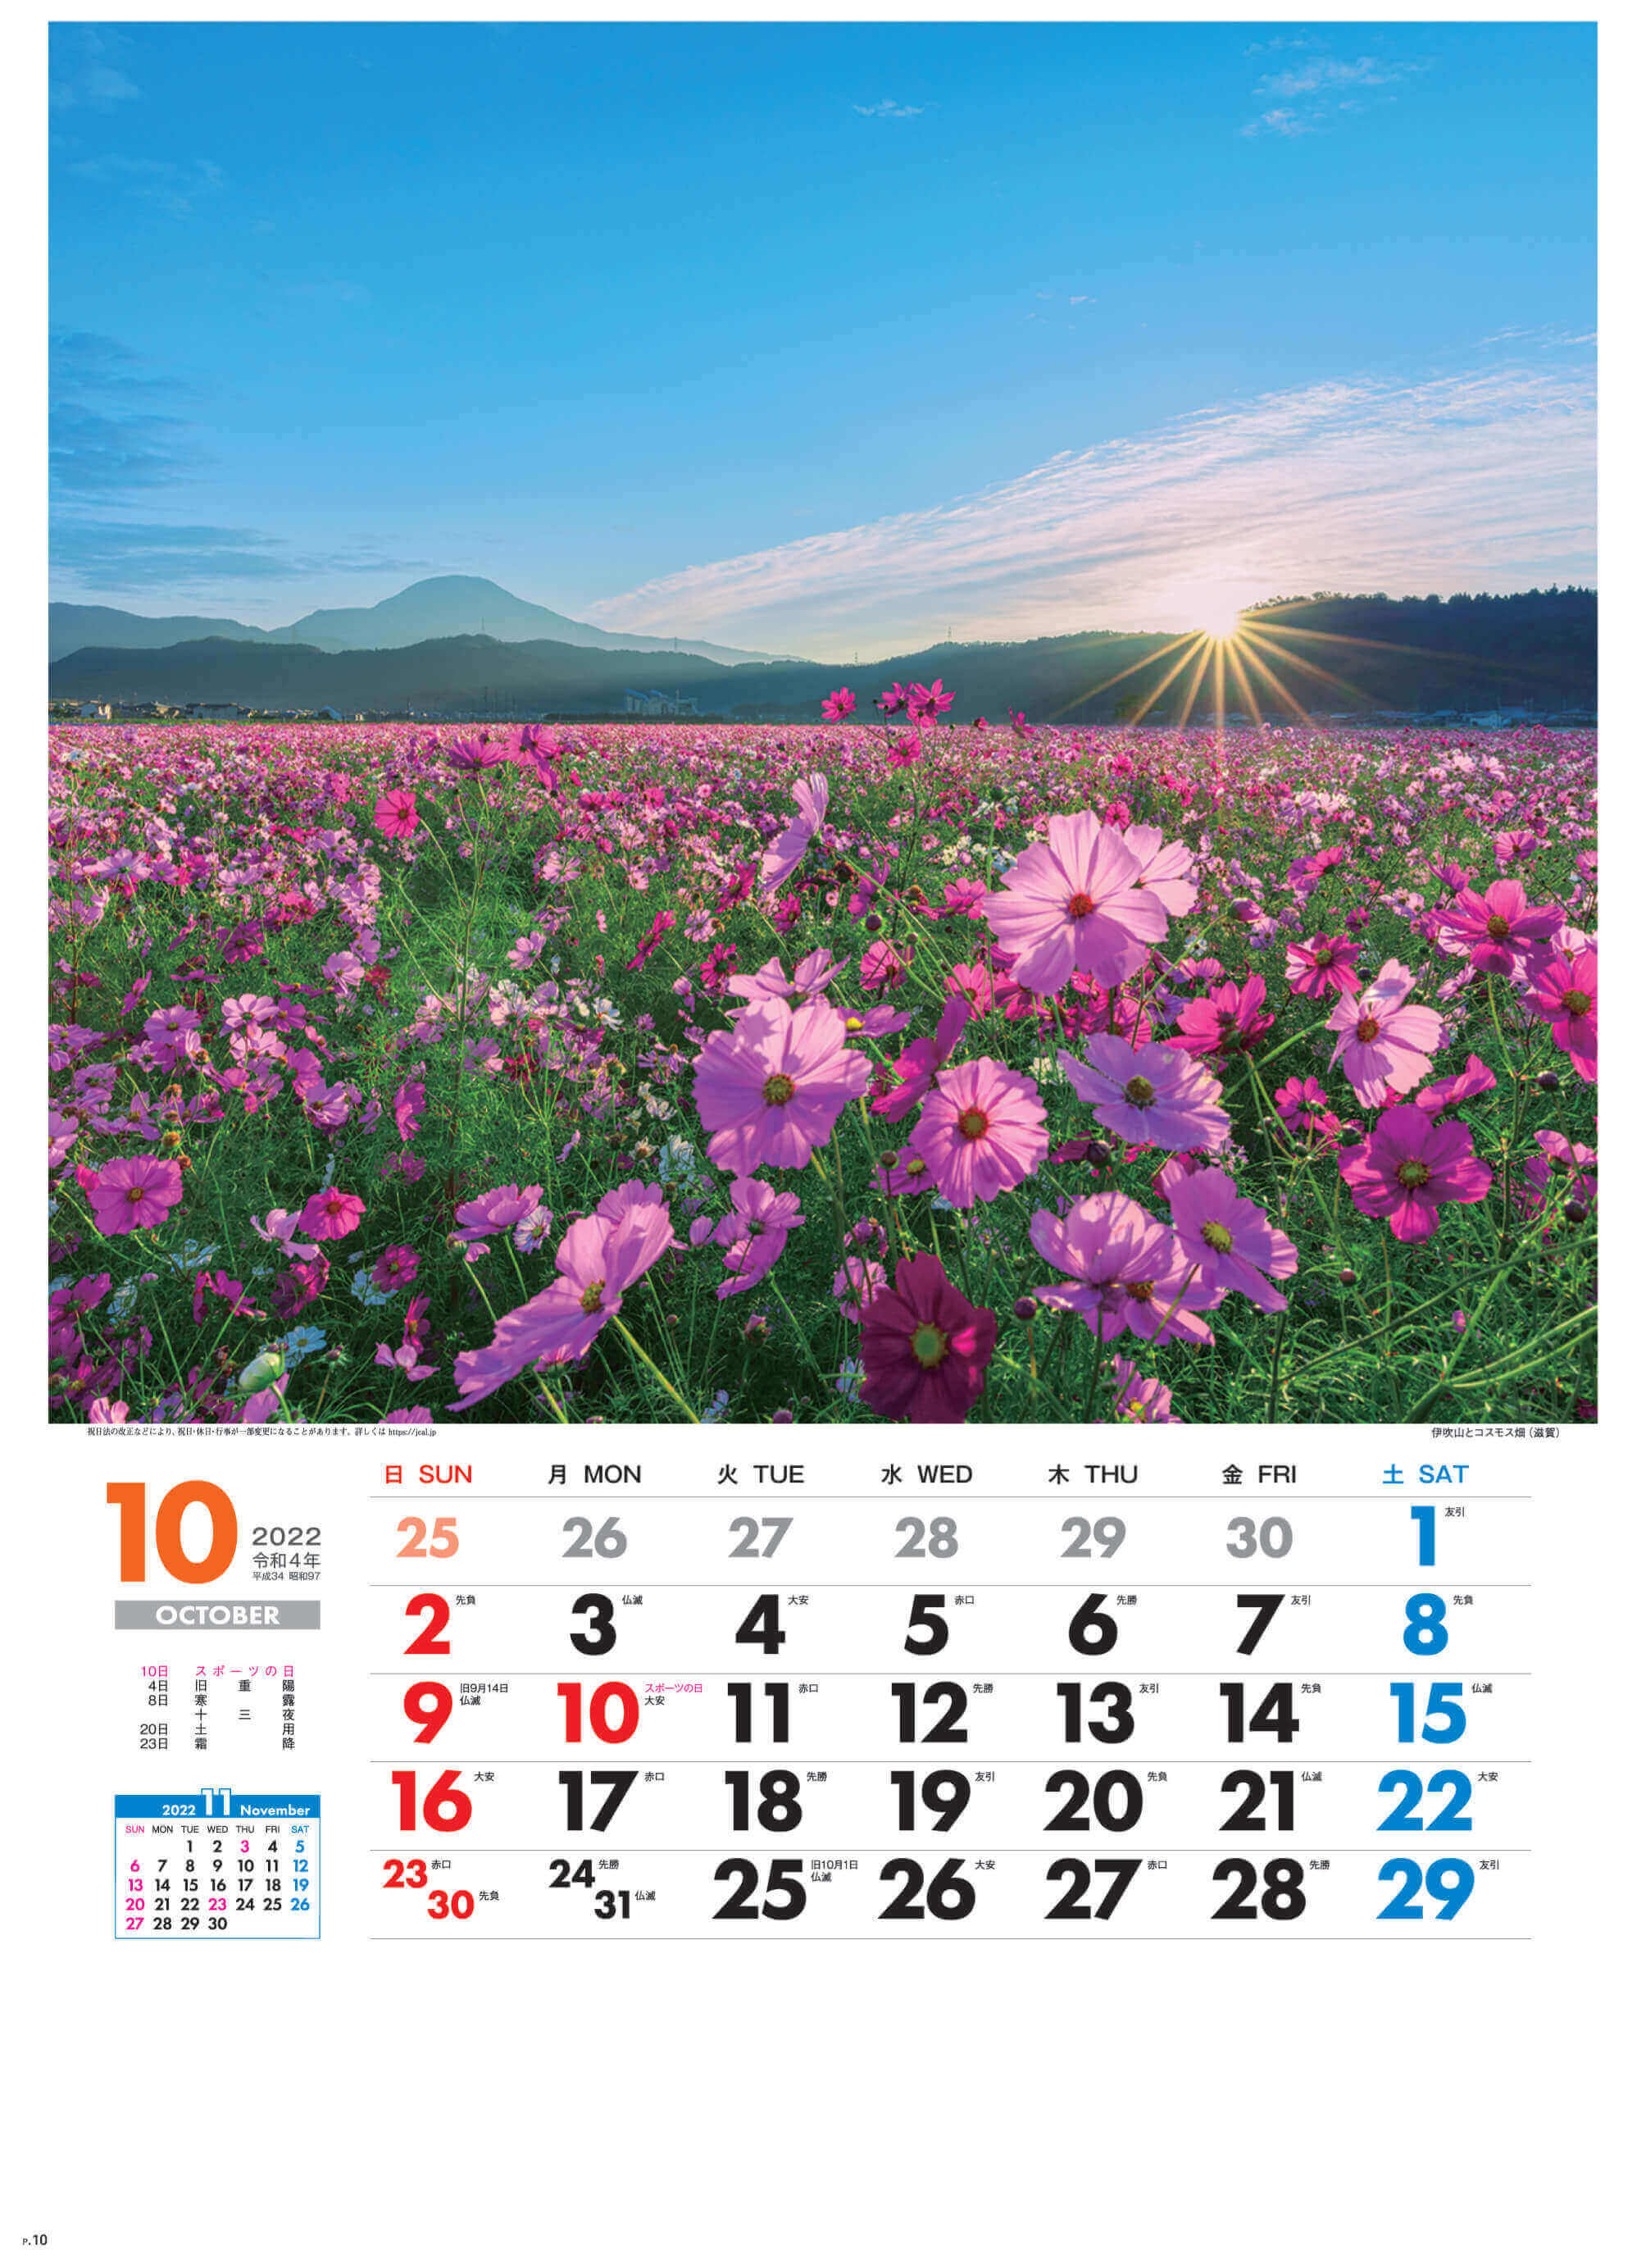 10月 伊吹山とコスモス畑(滋賀) 美しき日本 2022年カレンダーの画像